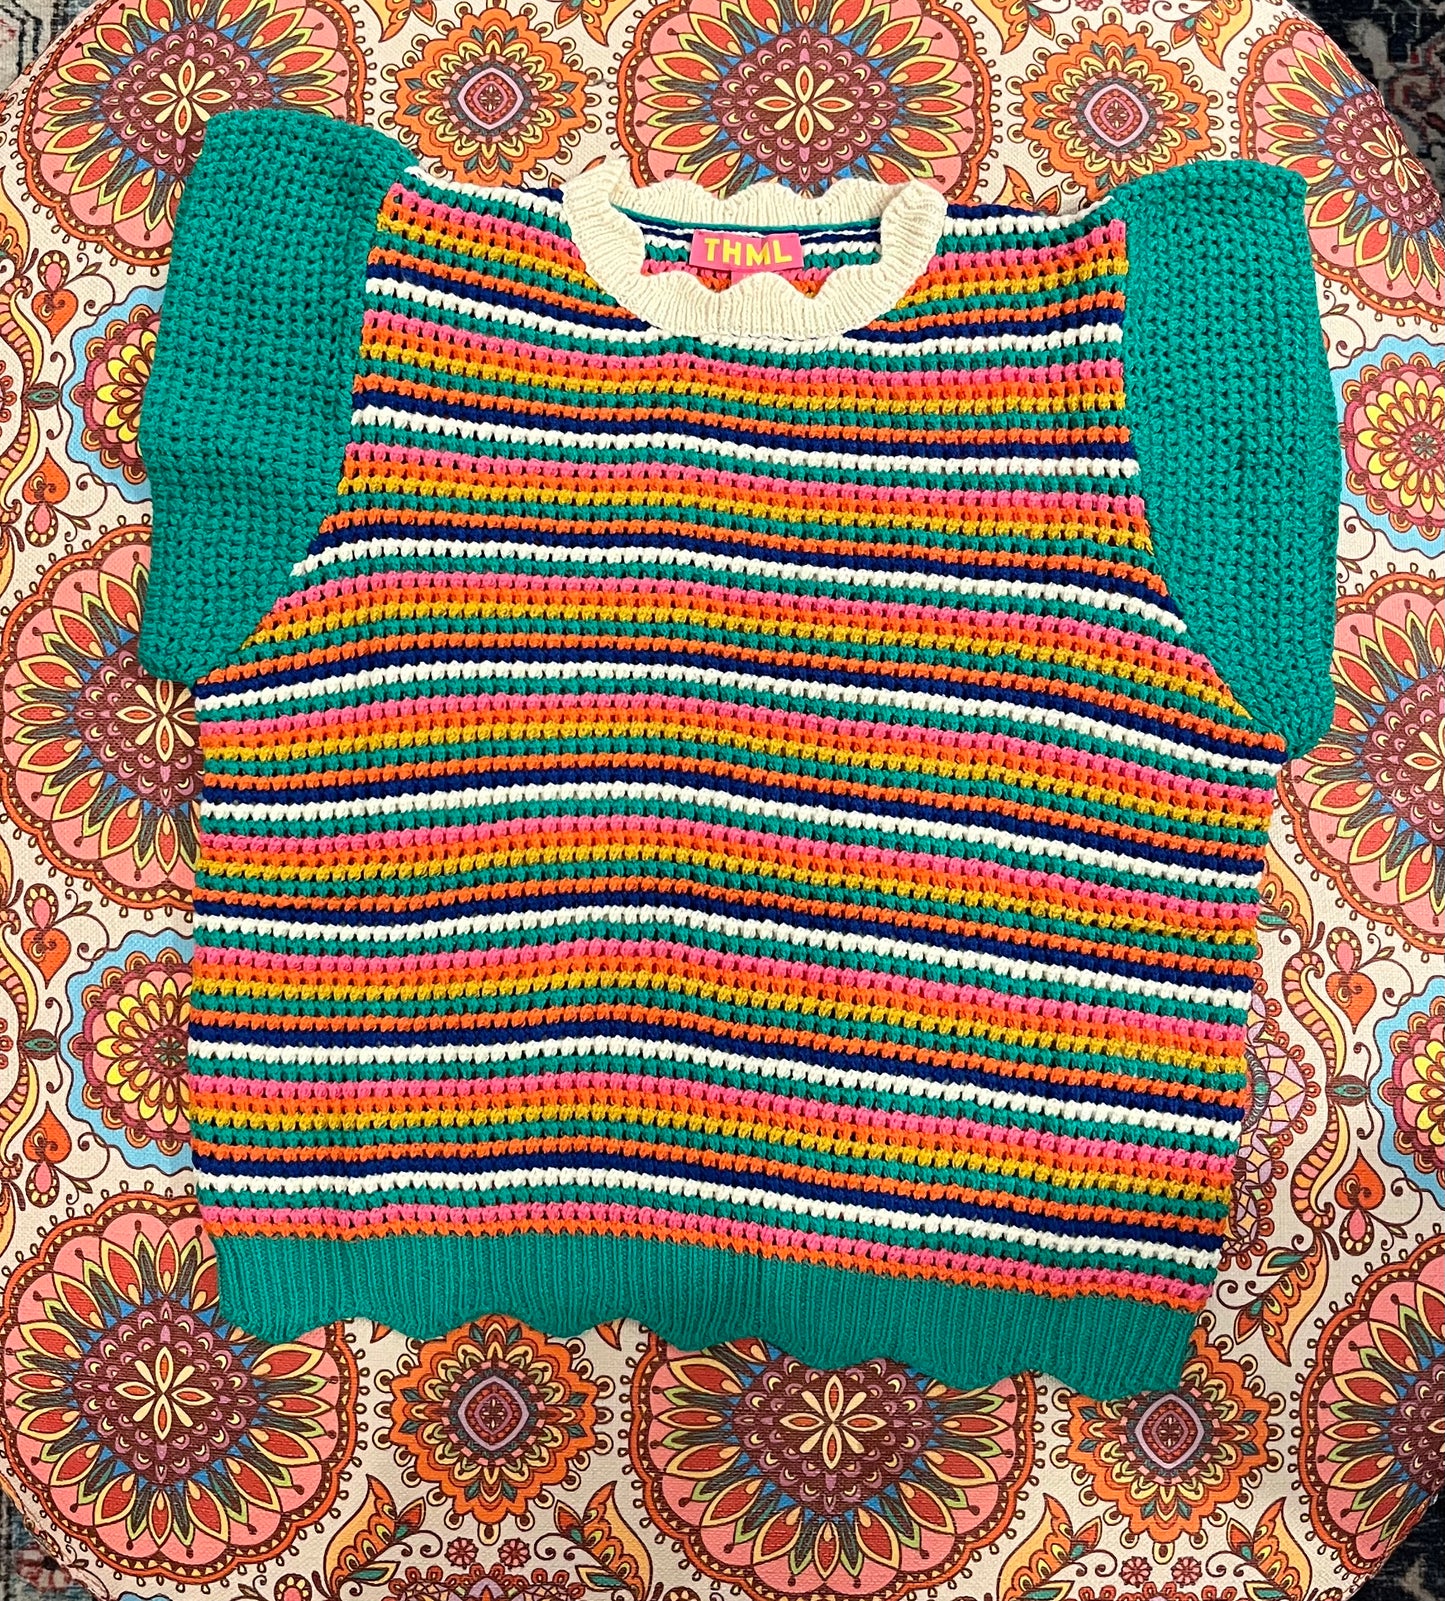 Bright Idea Knit Top